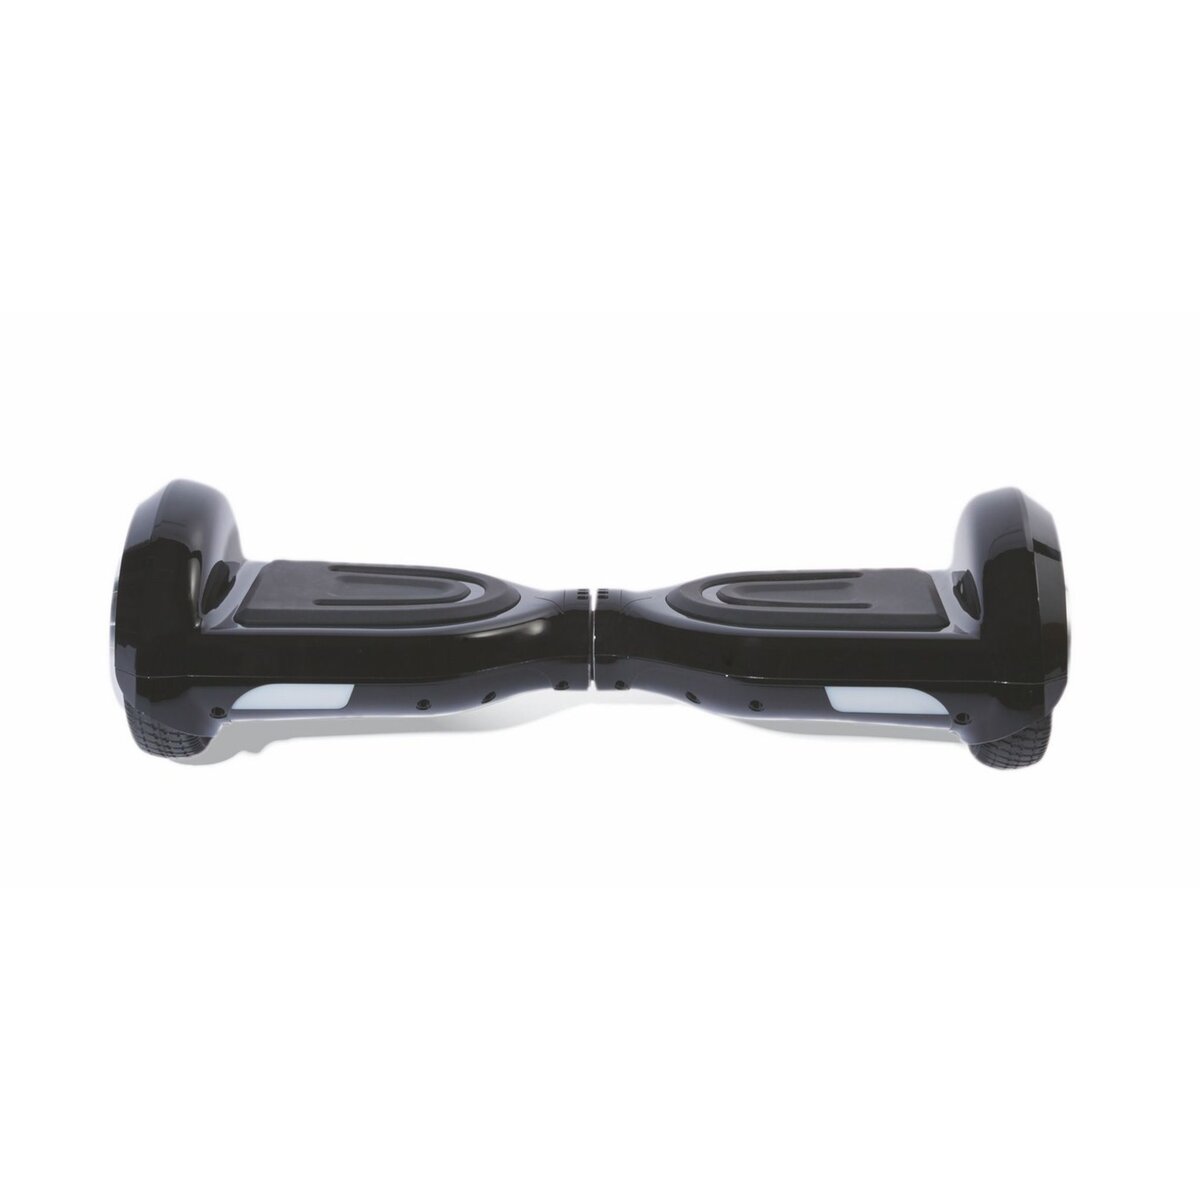 QILIVE Hoverboard - Q4898 - 6,5 pouces - Noir